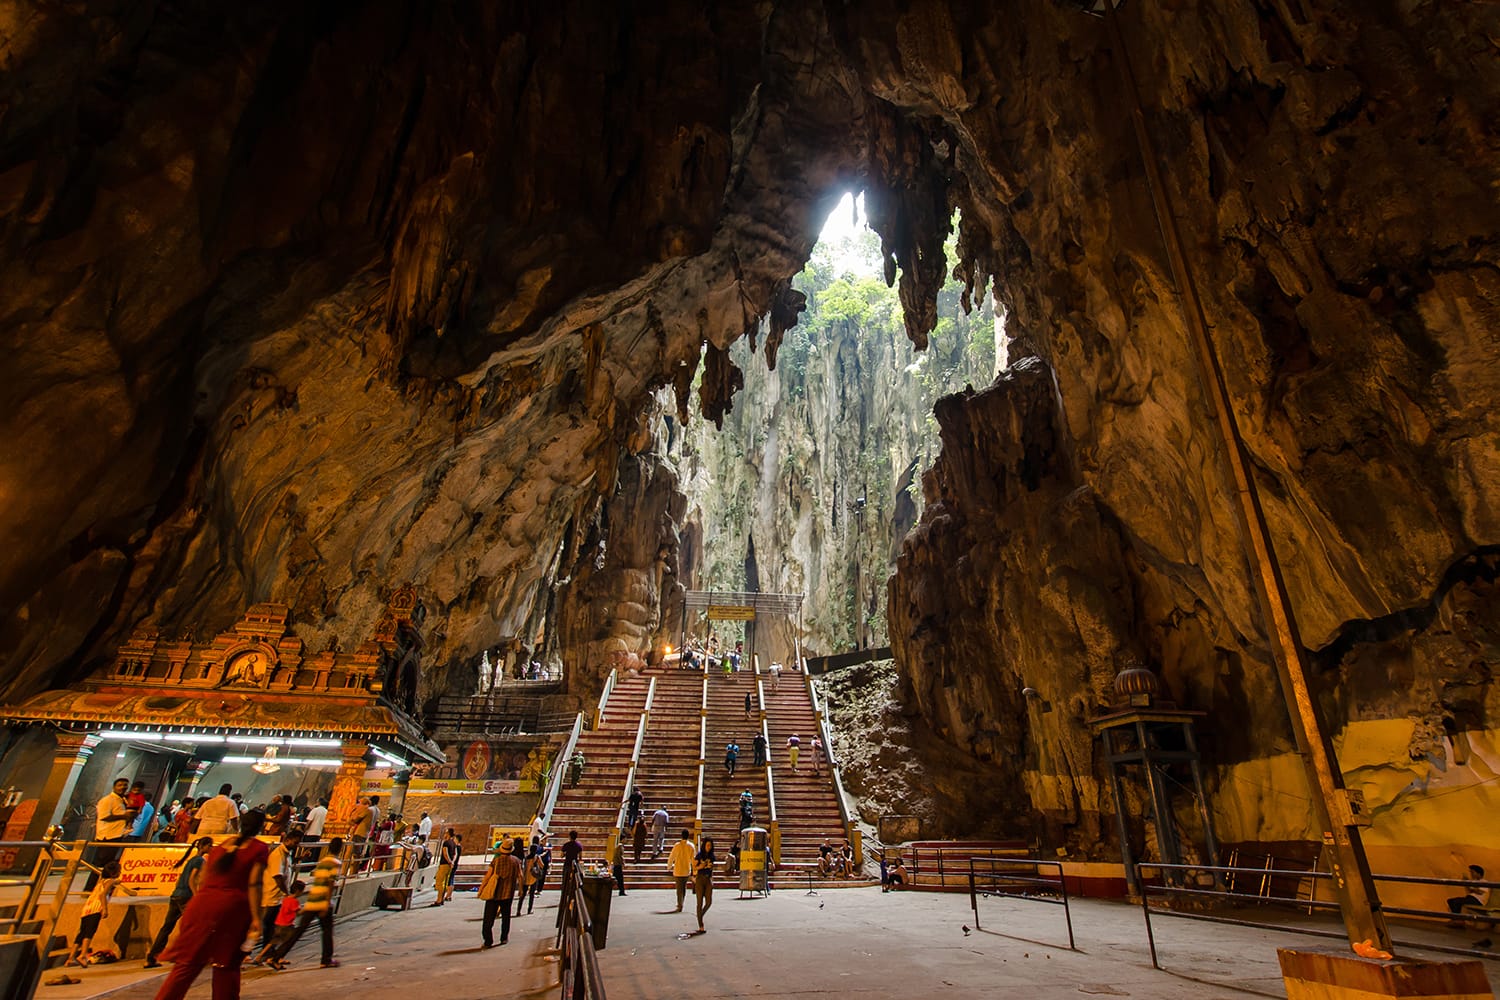 Batu caves in Malaysia